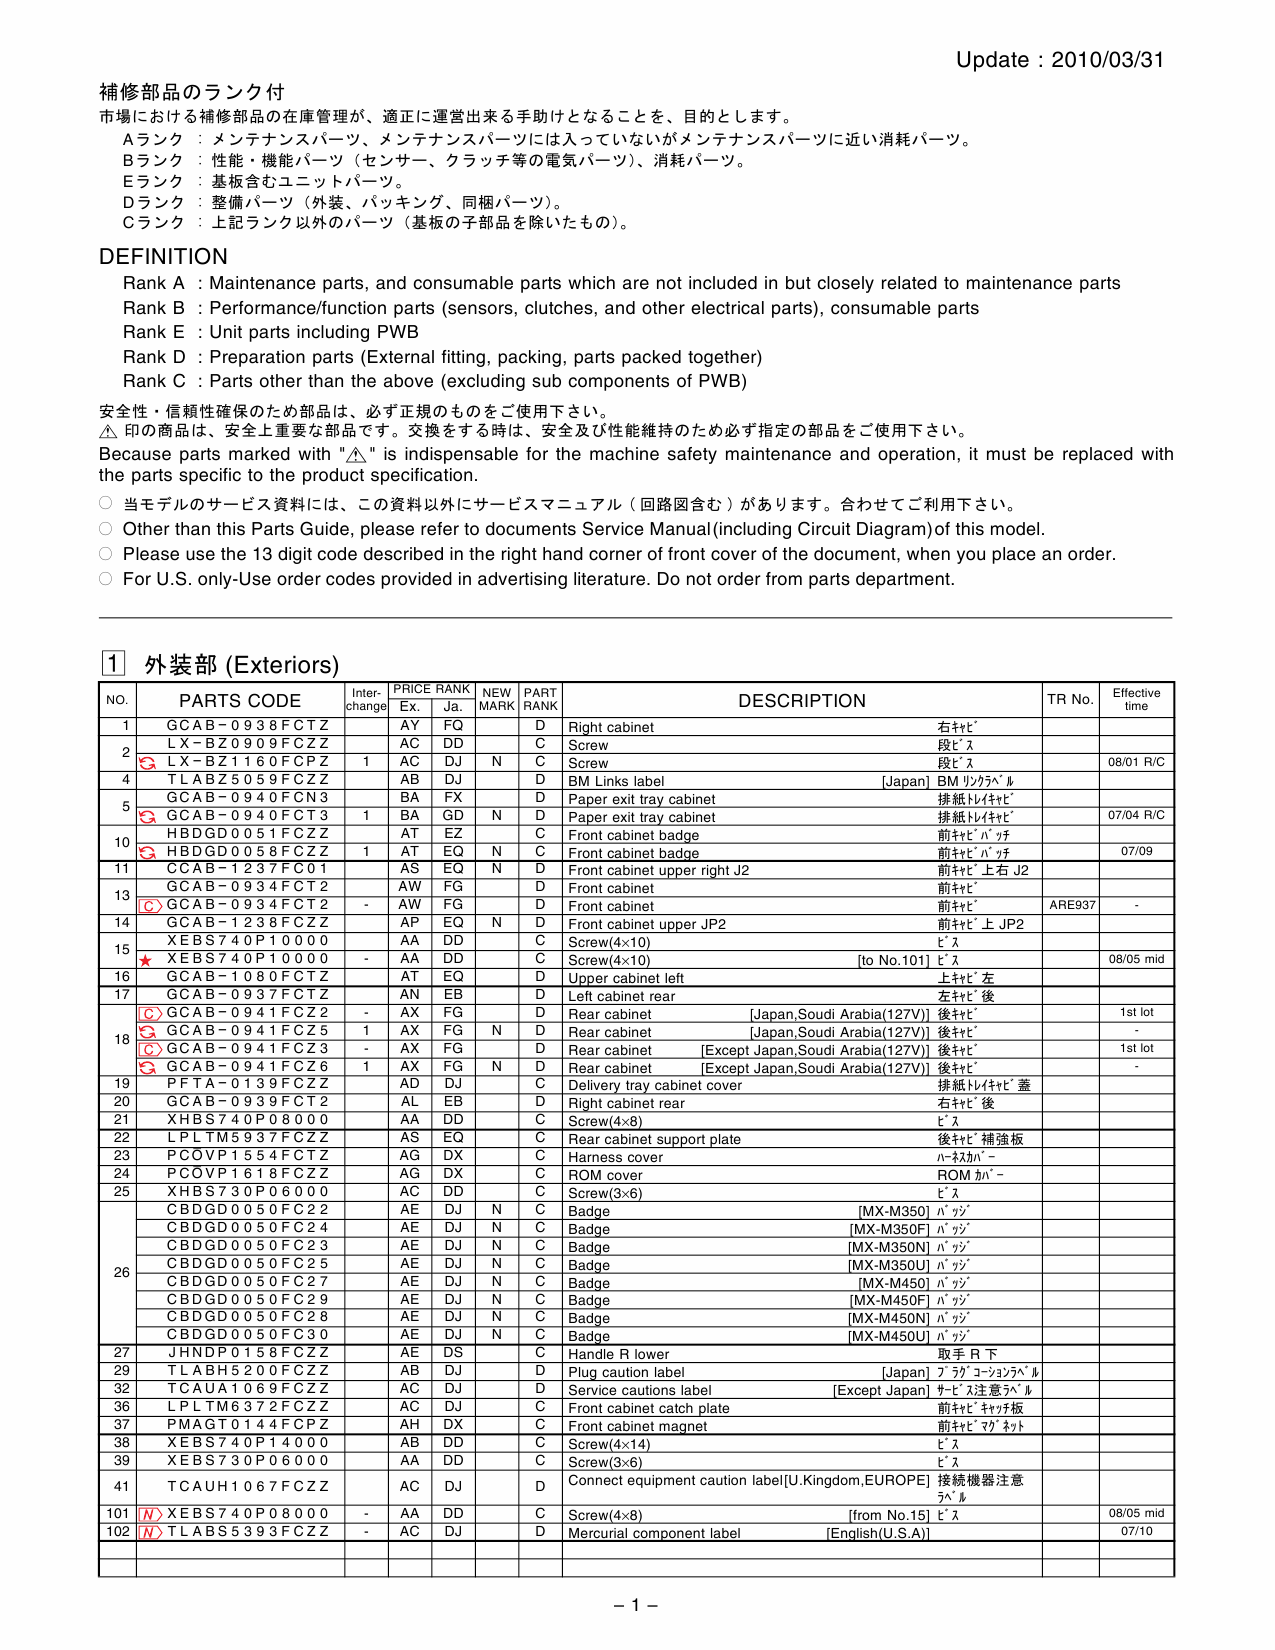 SHARP MX M350 M450 N U Parts Manual-2